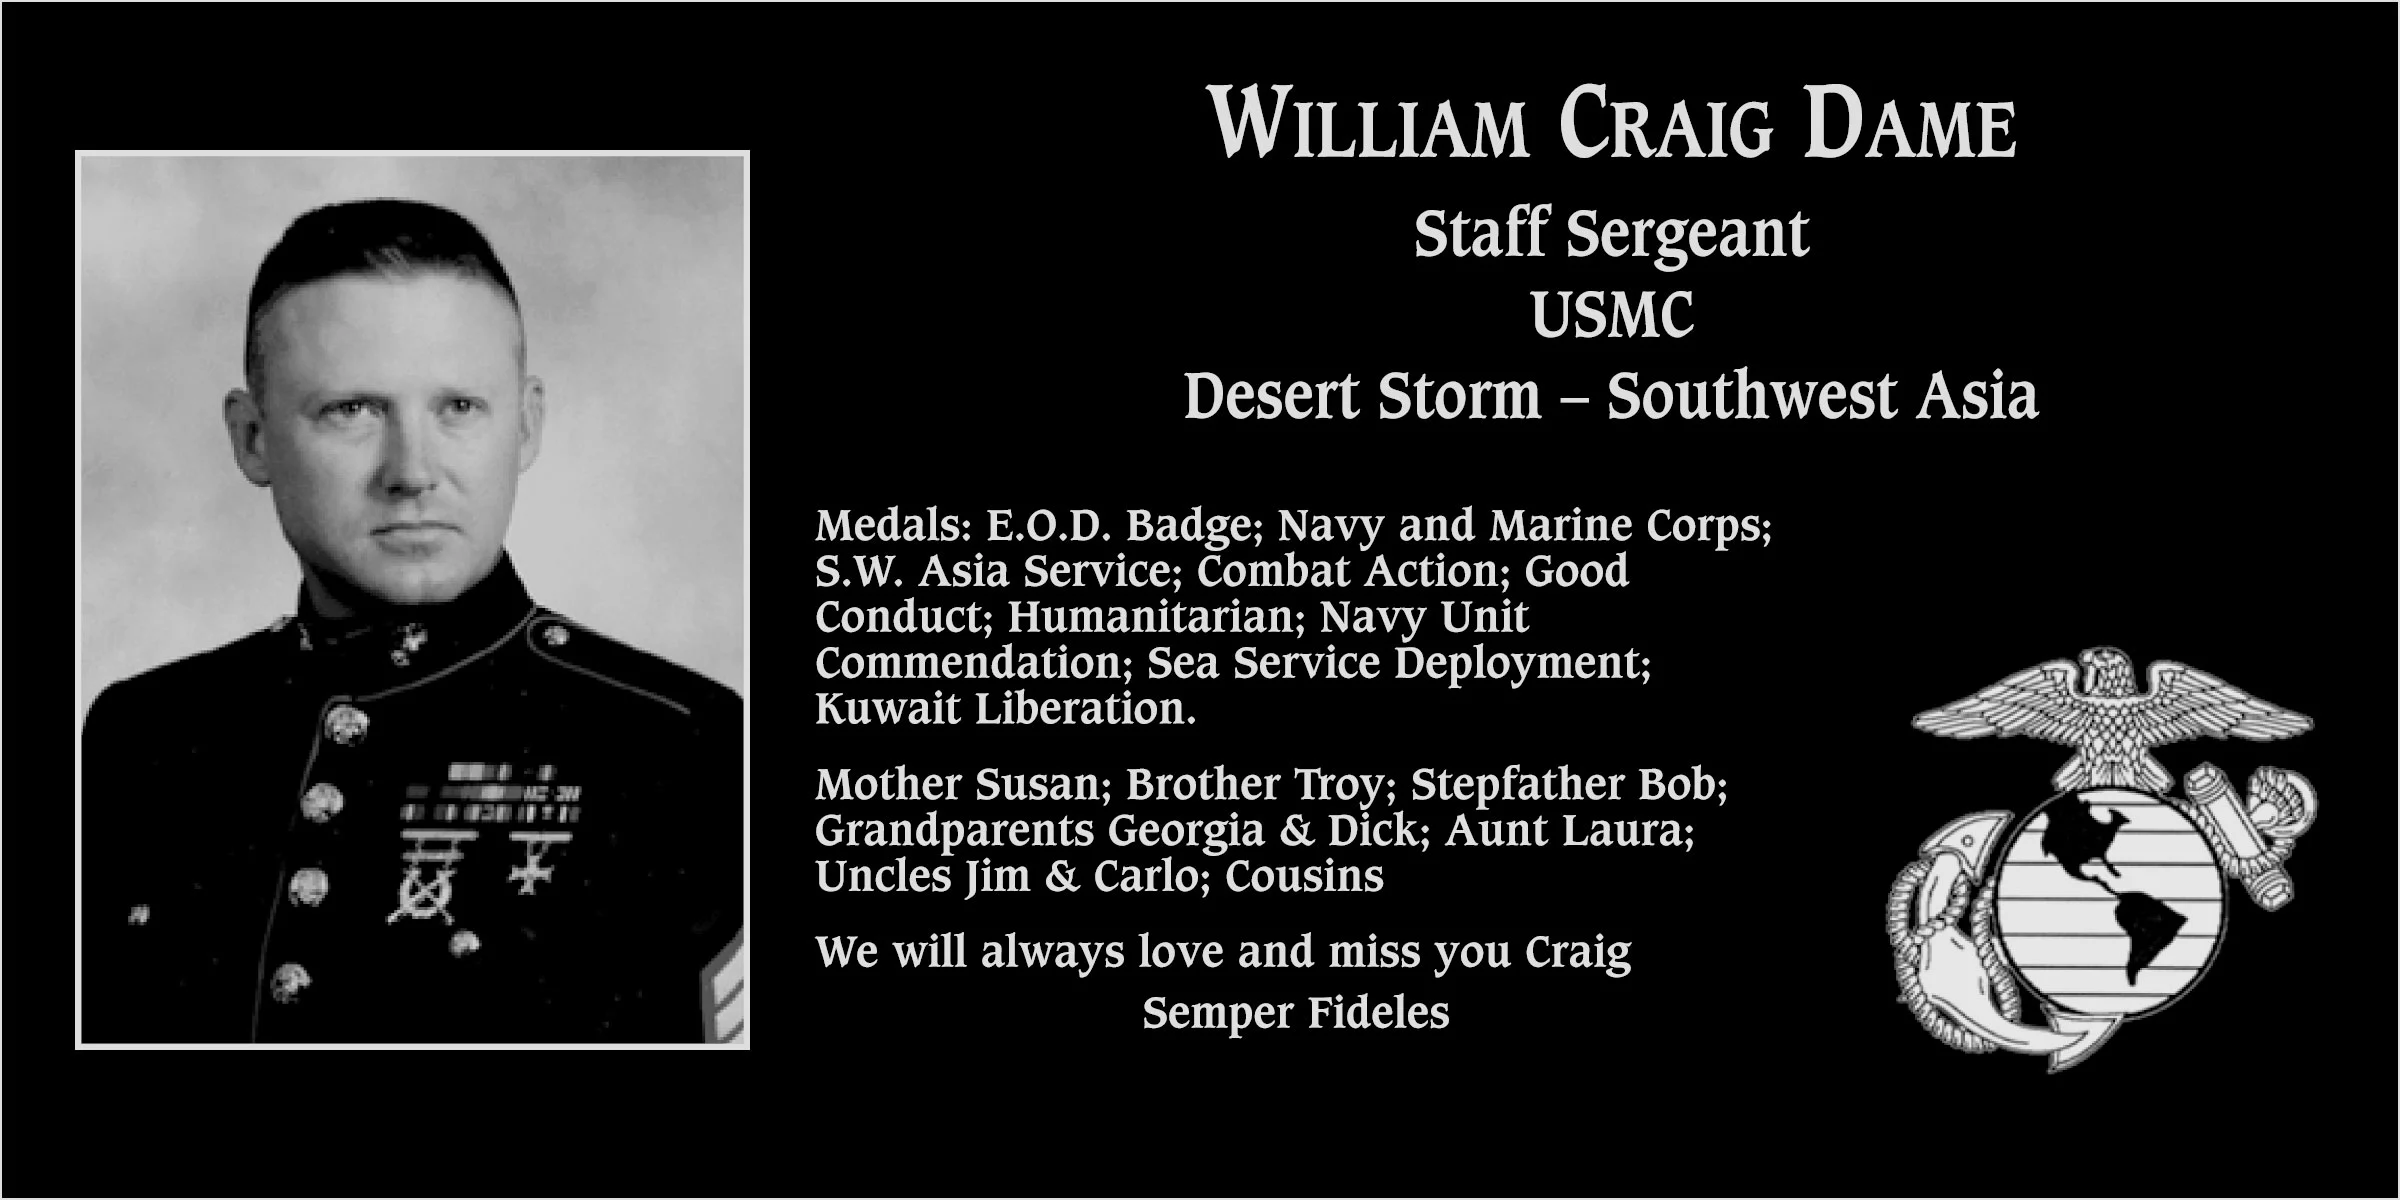 William Craig Dame